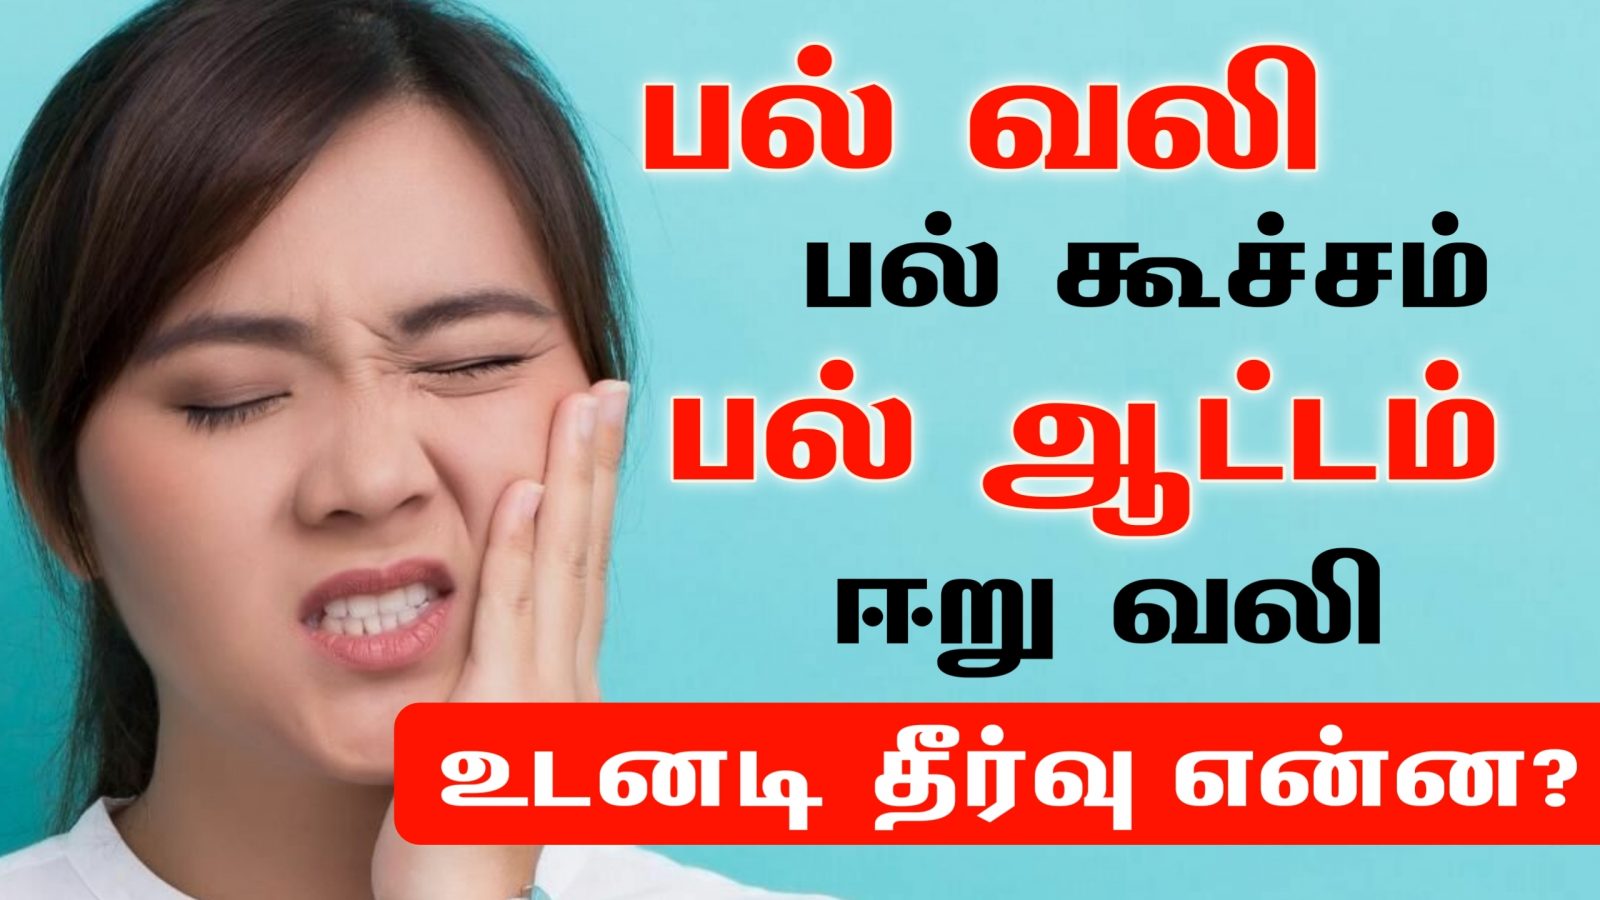 பல் வலி, பல் கூச்சம், பல் ஆட்டம், ஈறு வலி, ஈறு வீக்கம் உடனடியாக குணமாக | Tooth Pain Relief in Tamil